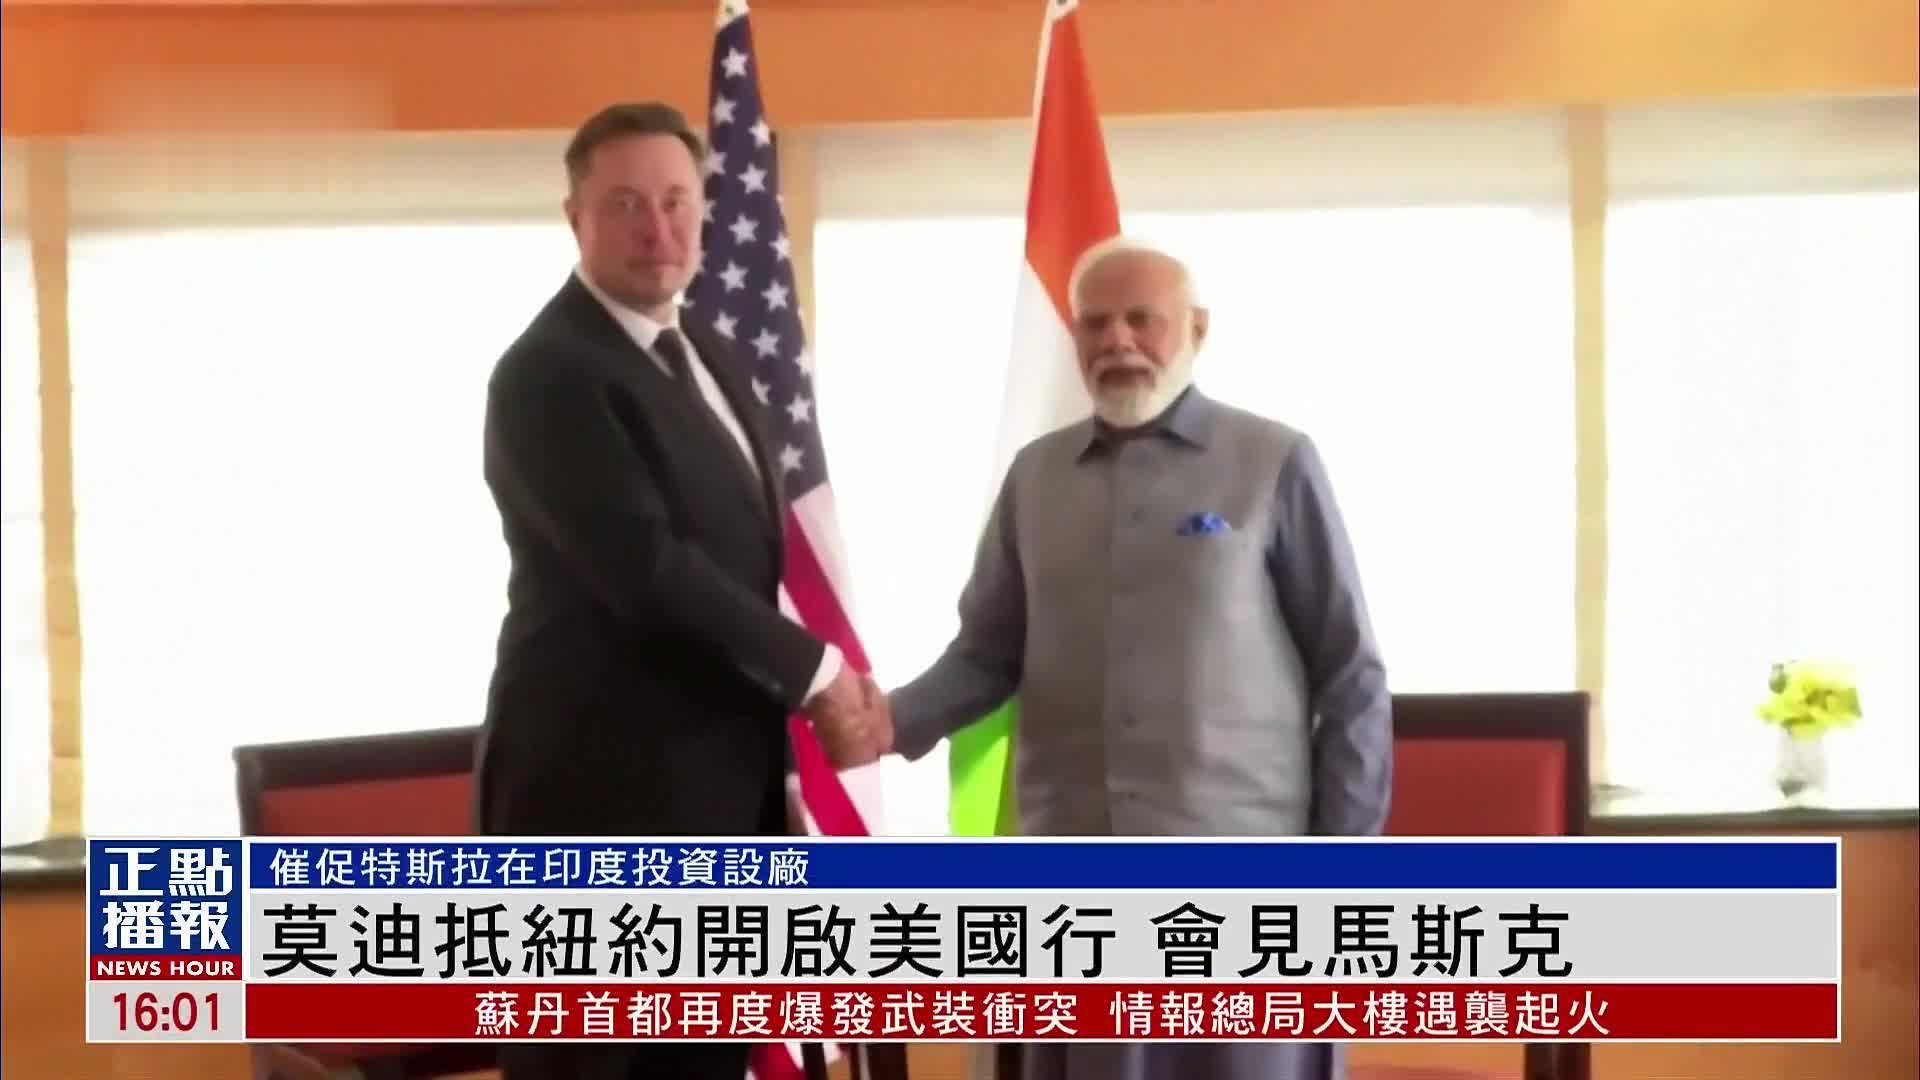 印度总理莫迪抵纽约开启美国行 会见马斯克